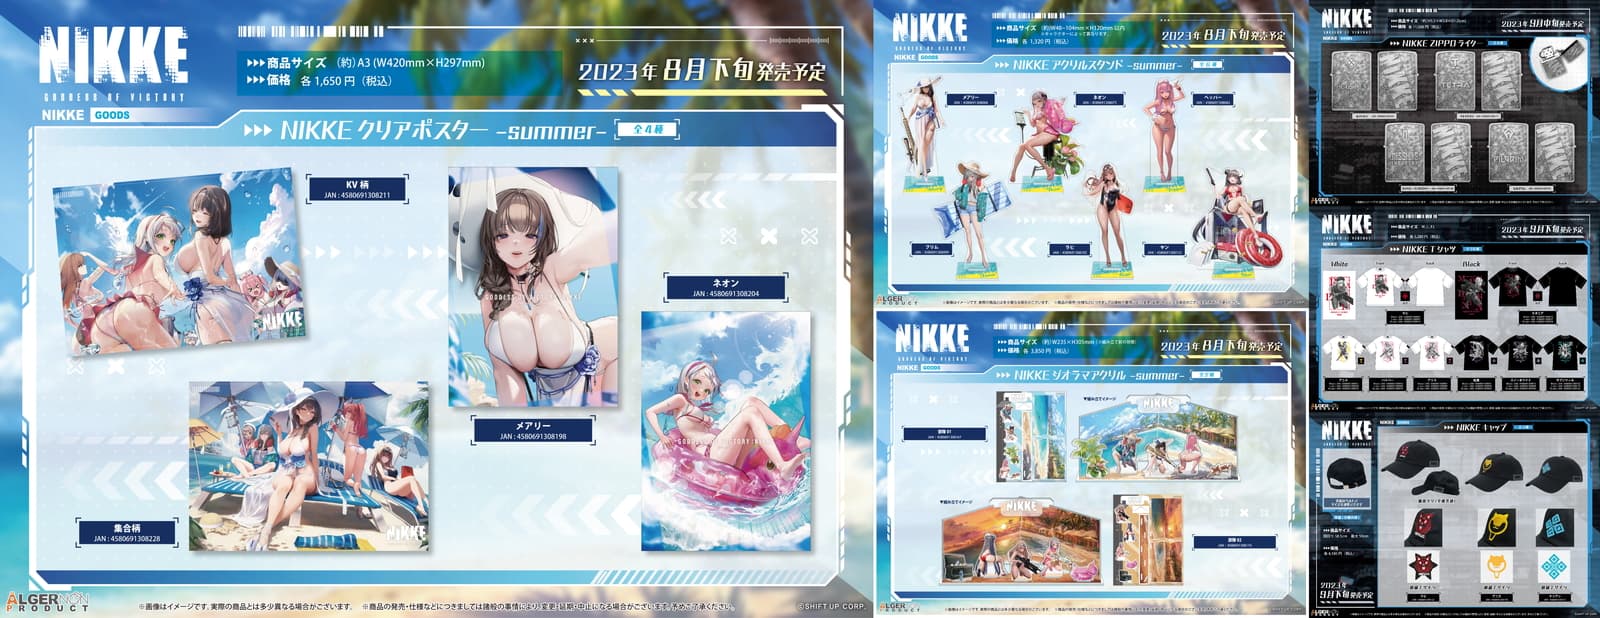 勝利の女神:NIKKE 水着姿のメアリーやネオンらのグッズ 8月より発売!